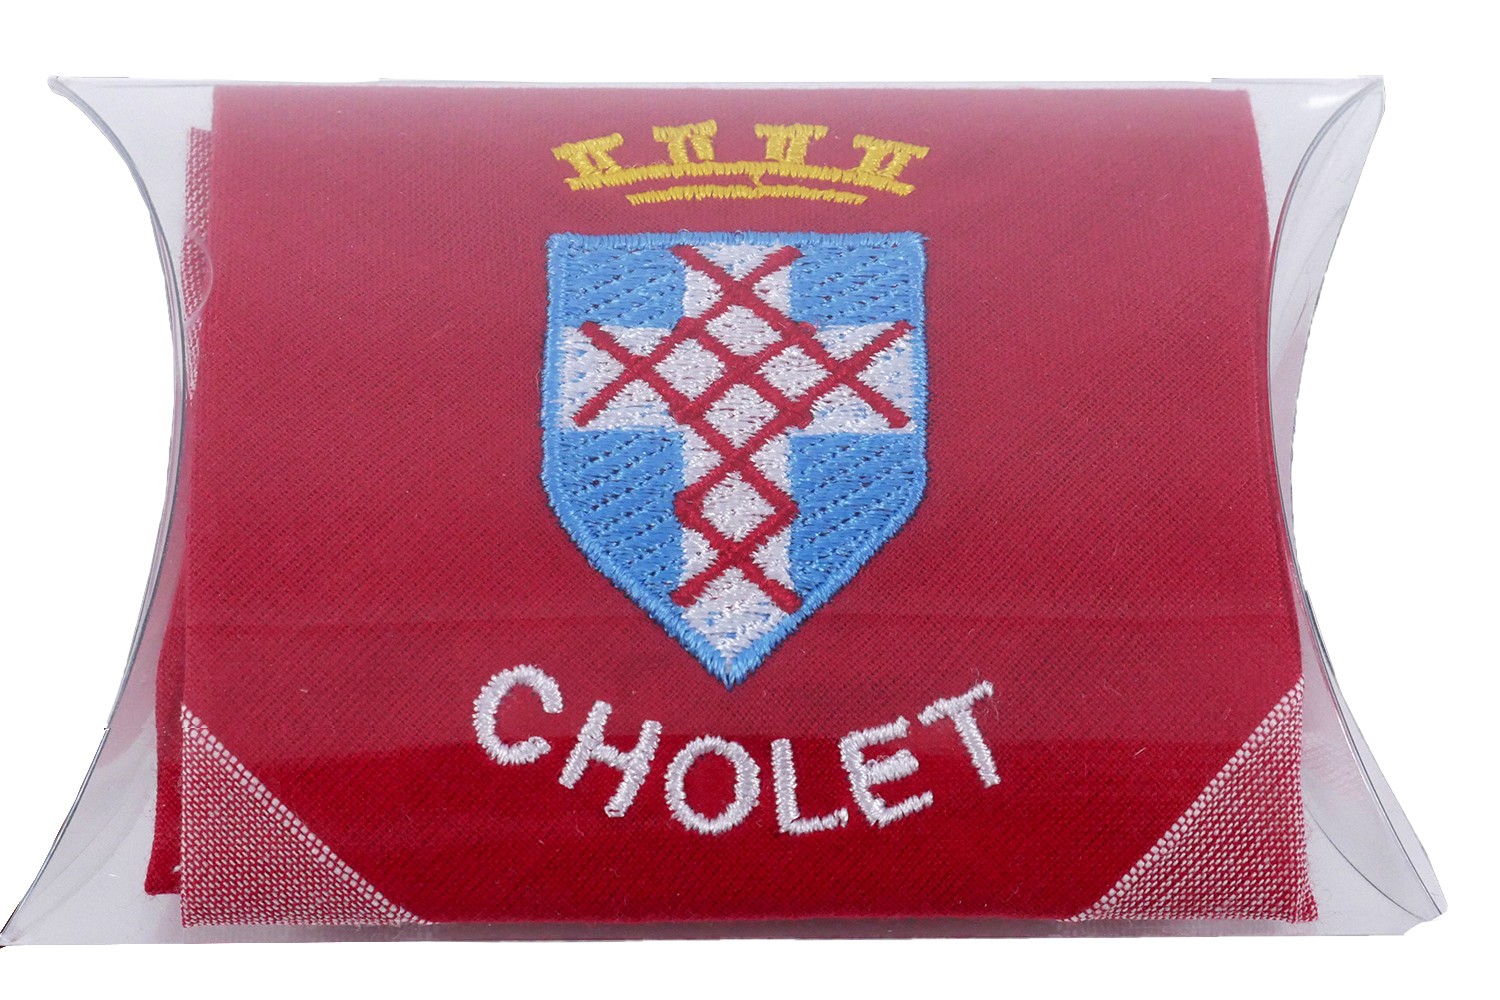 Mouchoir brodé de Cholet - Blason de Cholet